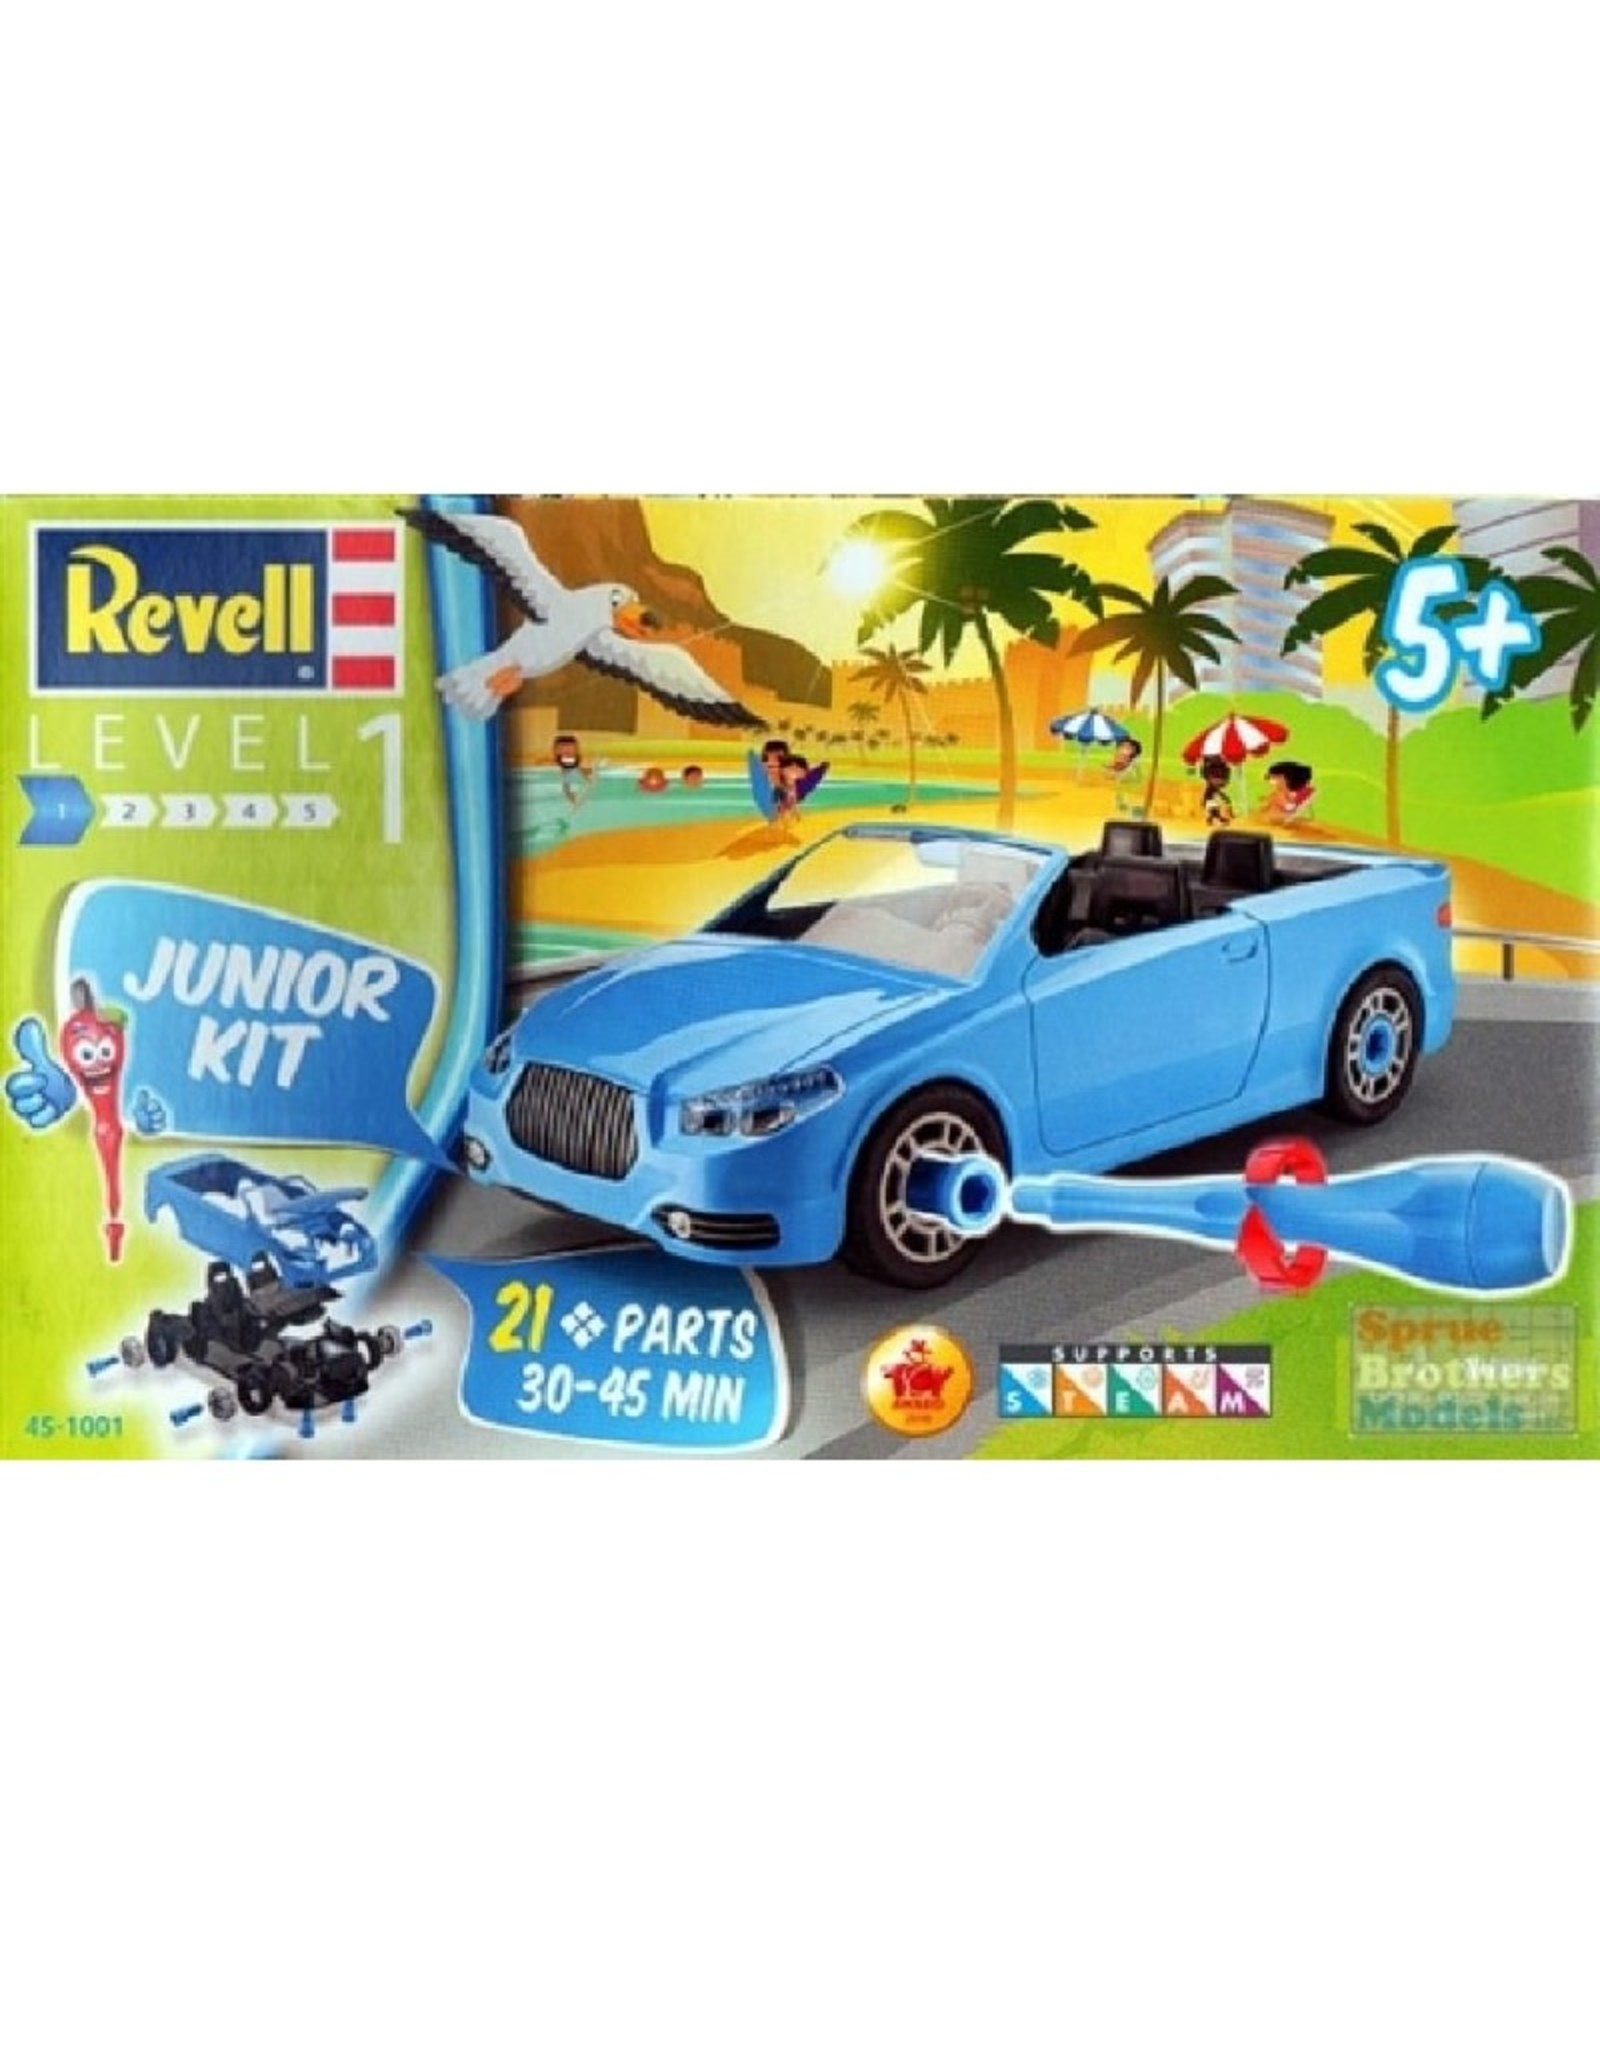 Revell Revell Junior Kit (Roadster Convertible)